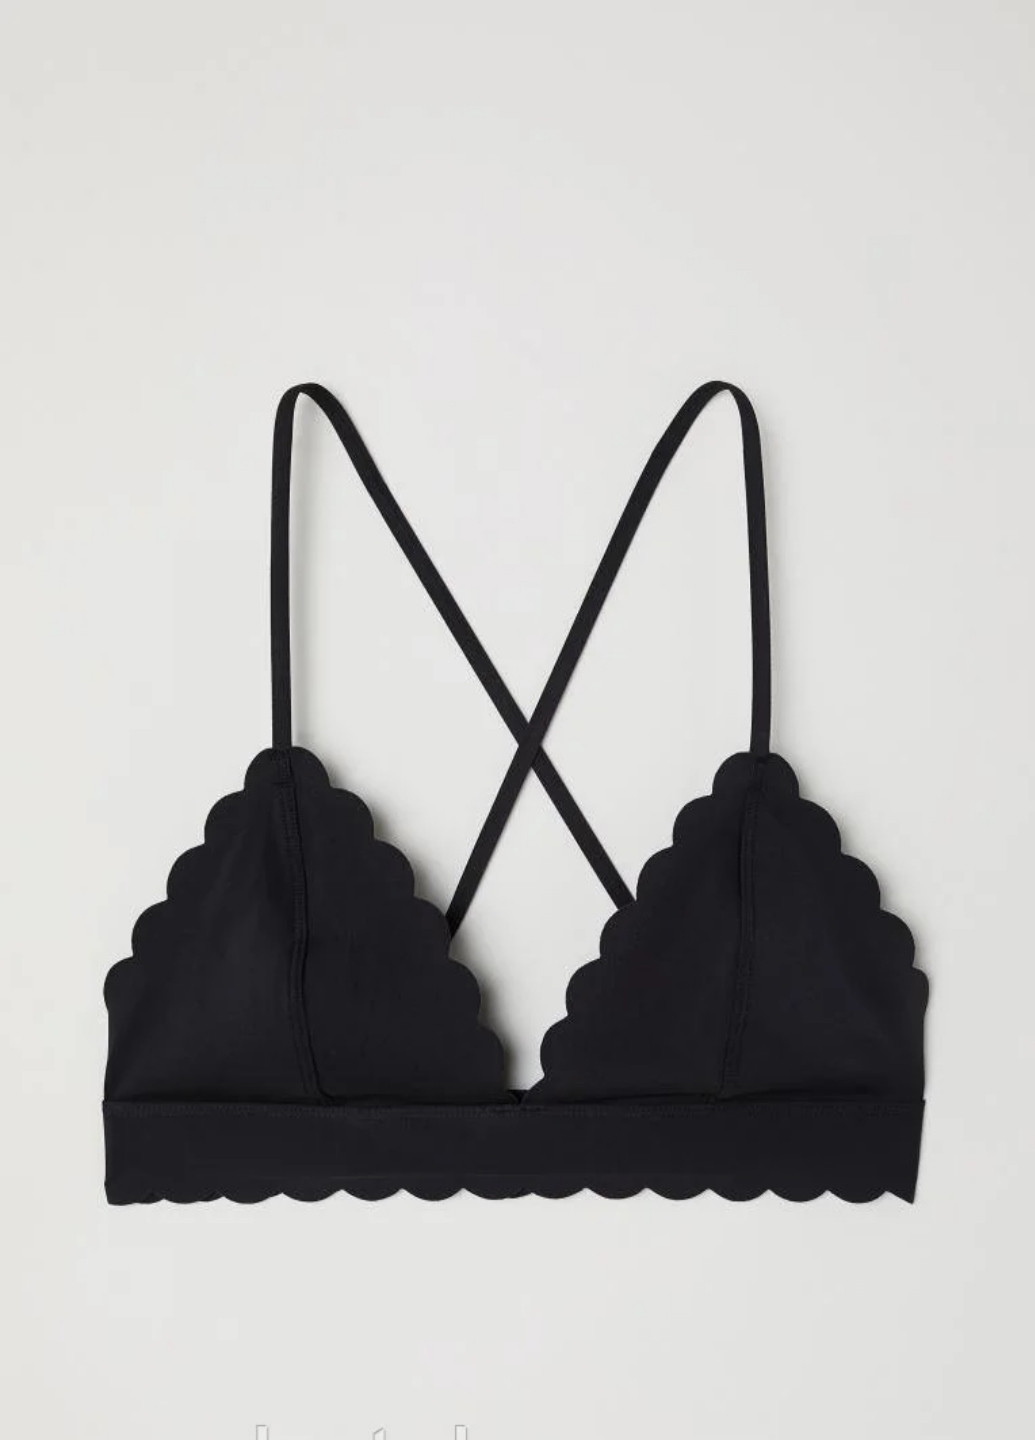 Купальный лиф H&M бикини однотонный чёрный пляжный полиэстер